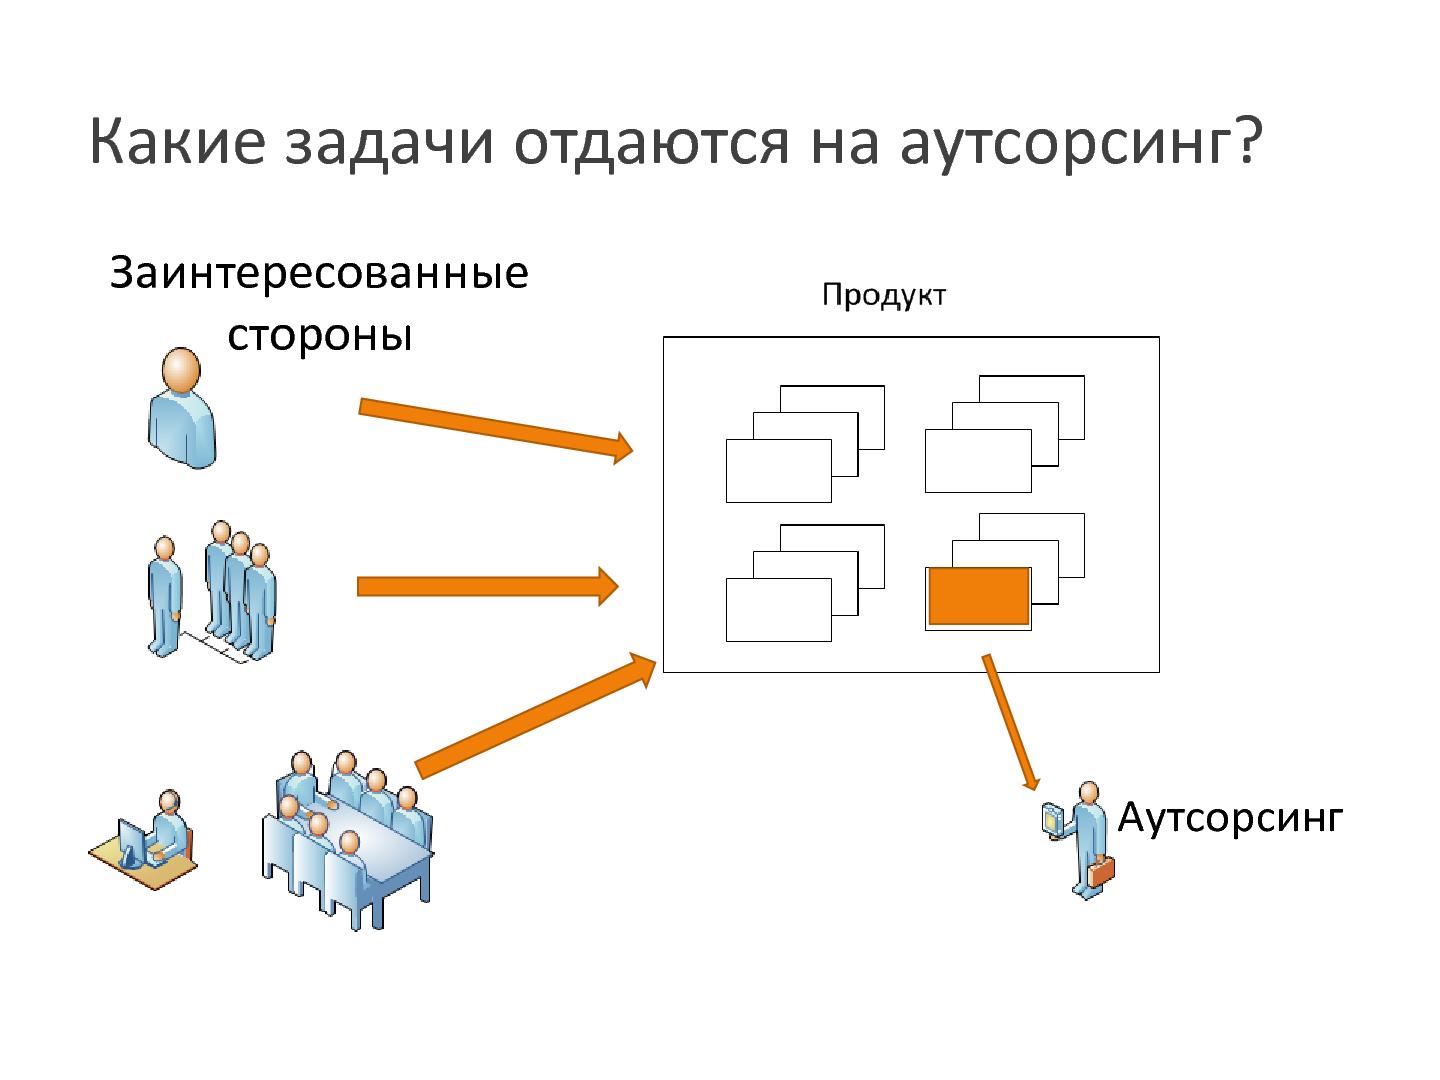 Файл:Есть ли шанс у аутсорсинговой компании быть успешной и в разработке сложных продуктов (Николай Запахалов, SECR-2013).pdf